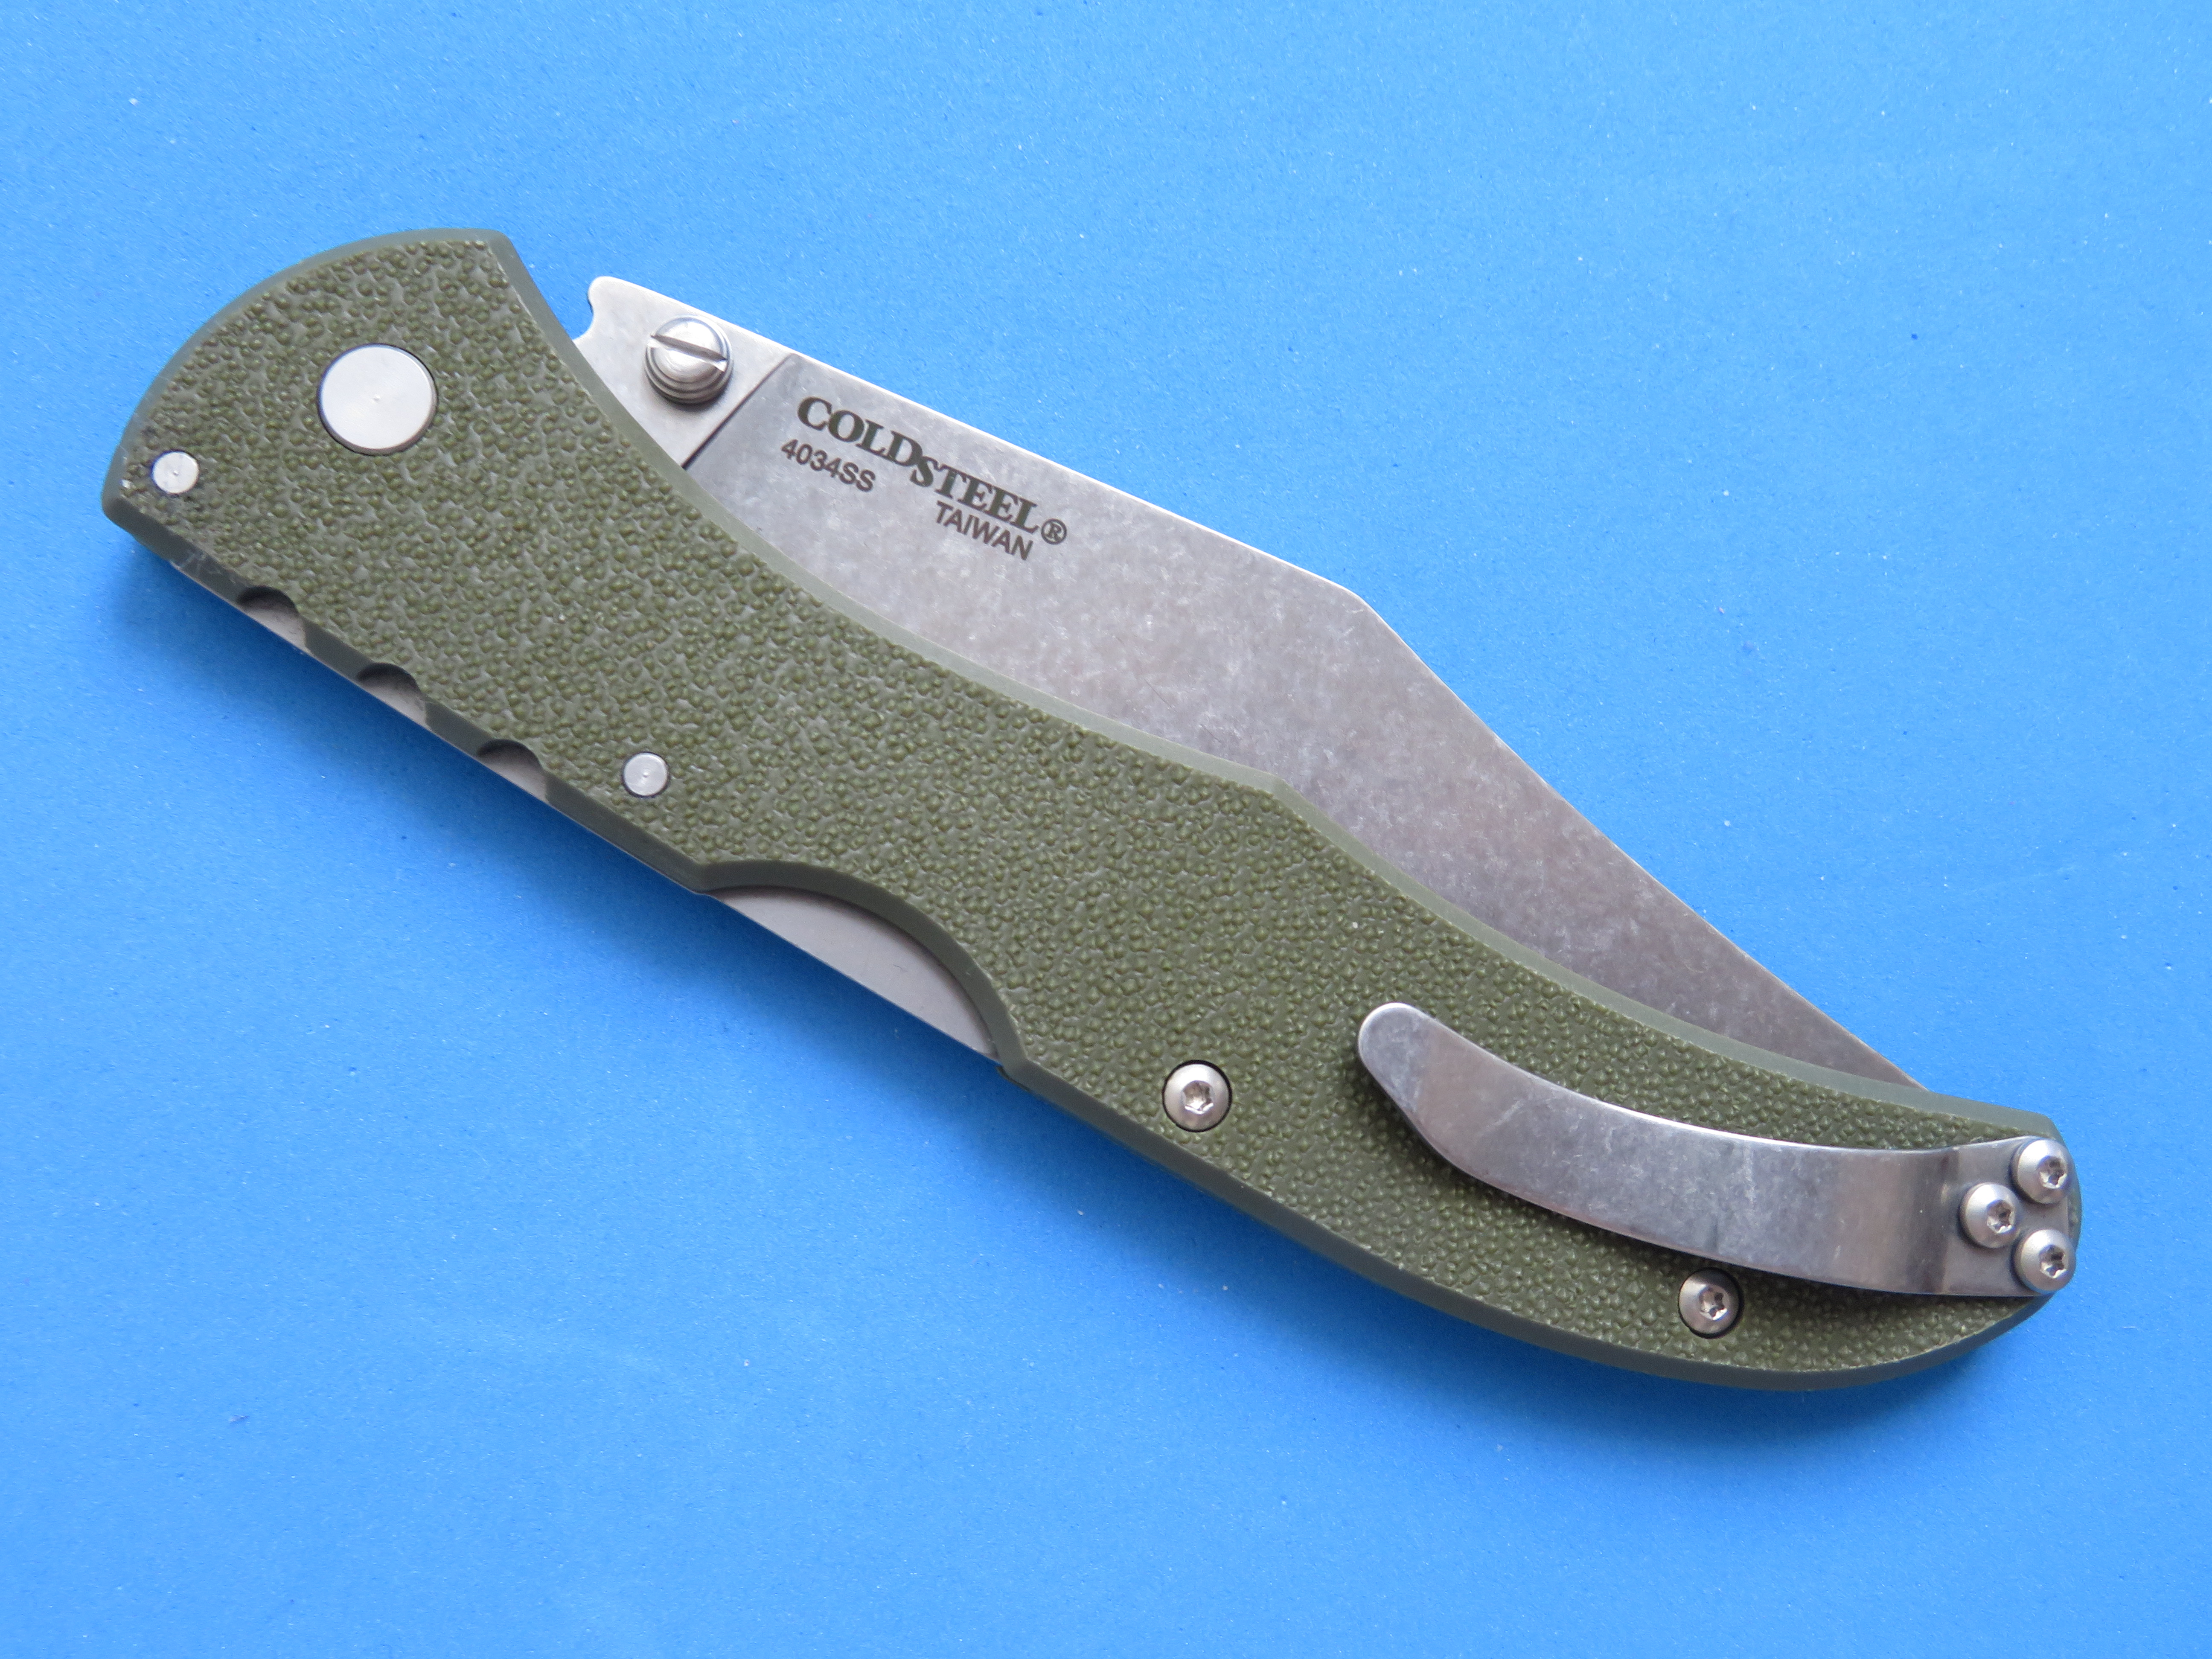 Hmotnost zavíracího nože Range Boss je 96 g a délka zavřeného nože je 134mm.